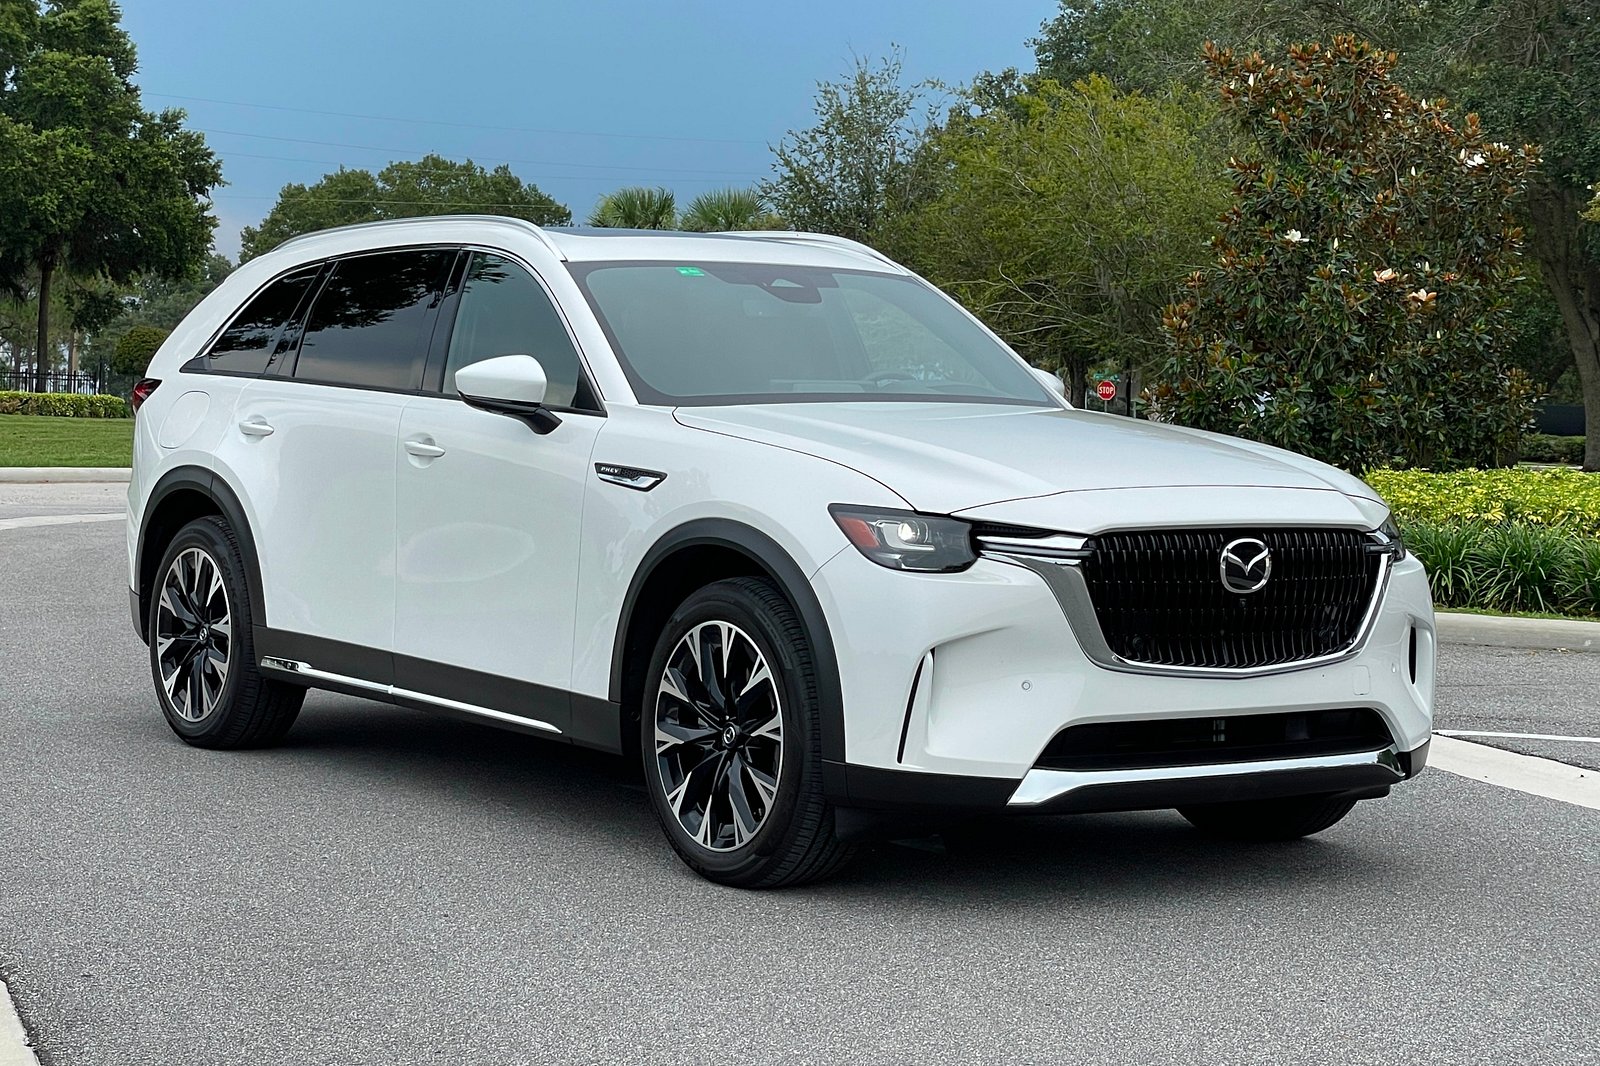 Электро-кар, скорее всего, будет кроссовером с существующей заводской табличкой. Mazda подтвердила, что запуск нового внедорожника CX-70 отложен до 2024 года, а выпуск нового полностью электрического автомобиля ожидается в 2025 году. Об этих разработ